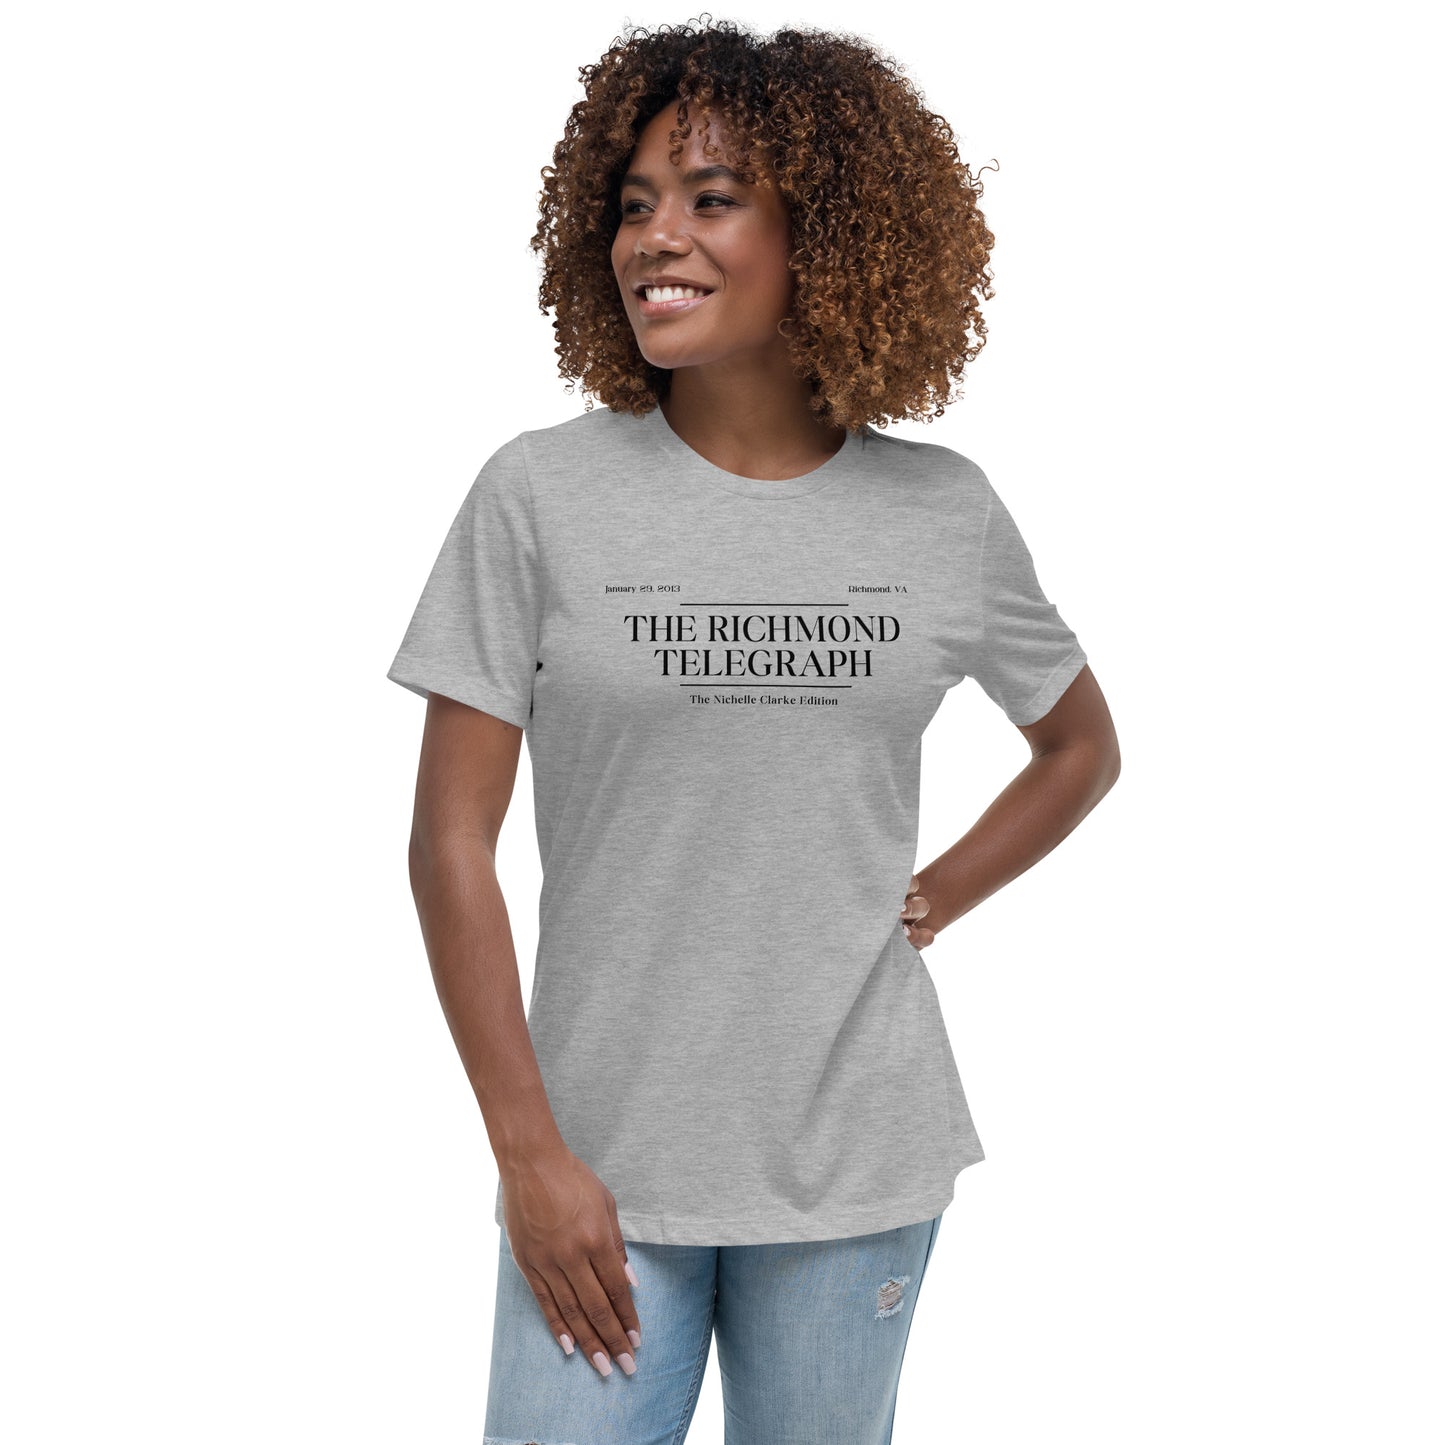 Nichelle Clarke | Women's Relaxed T-Shirt